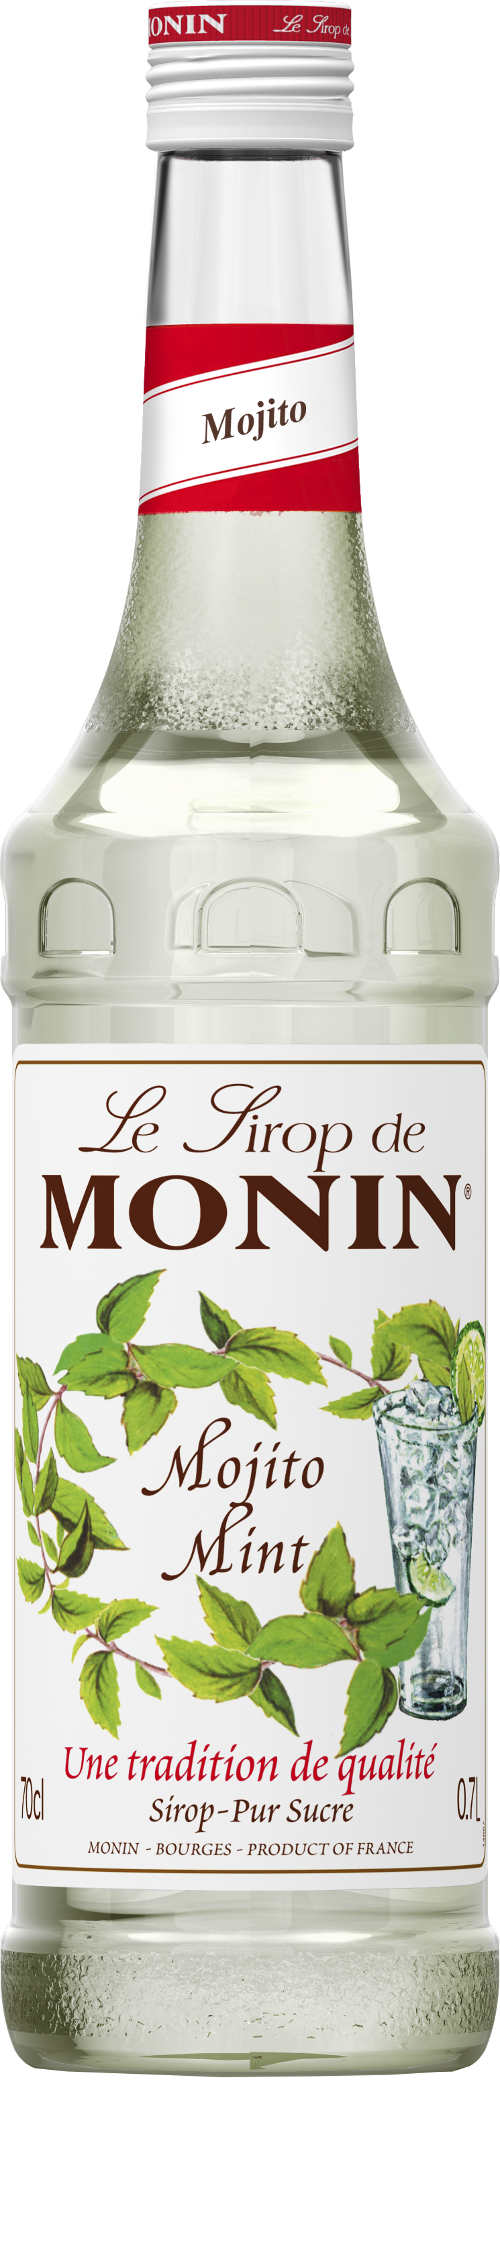 Le Sirop de MONIN Mojito Mint 0.7l